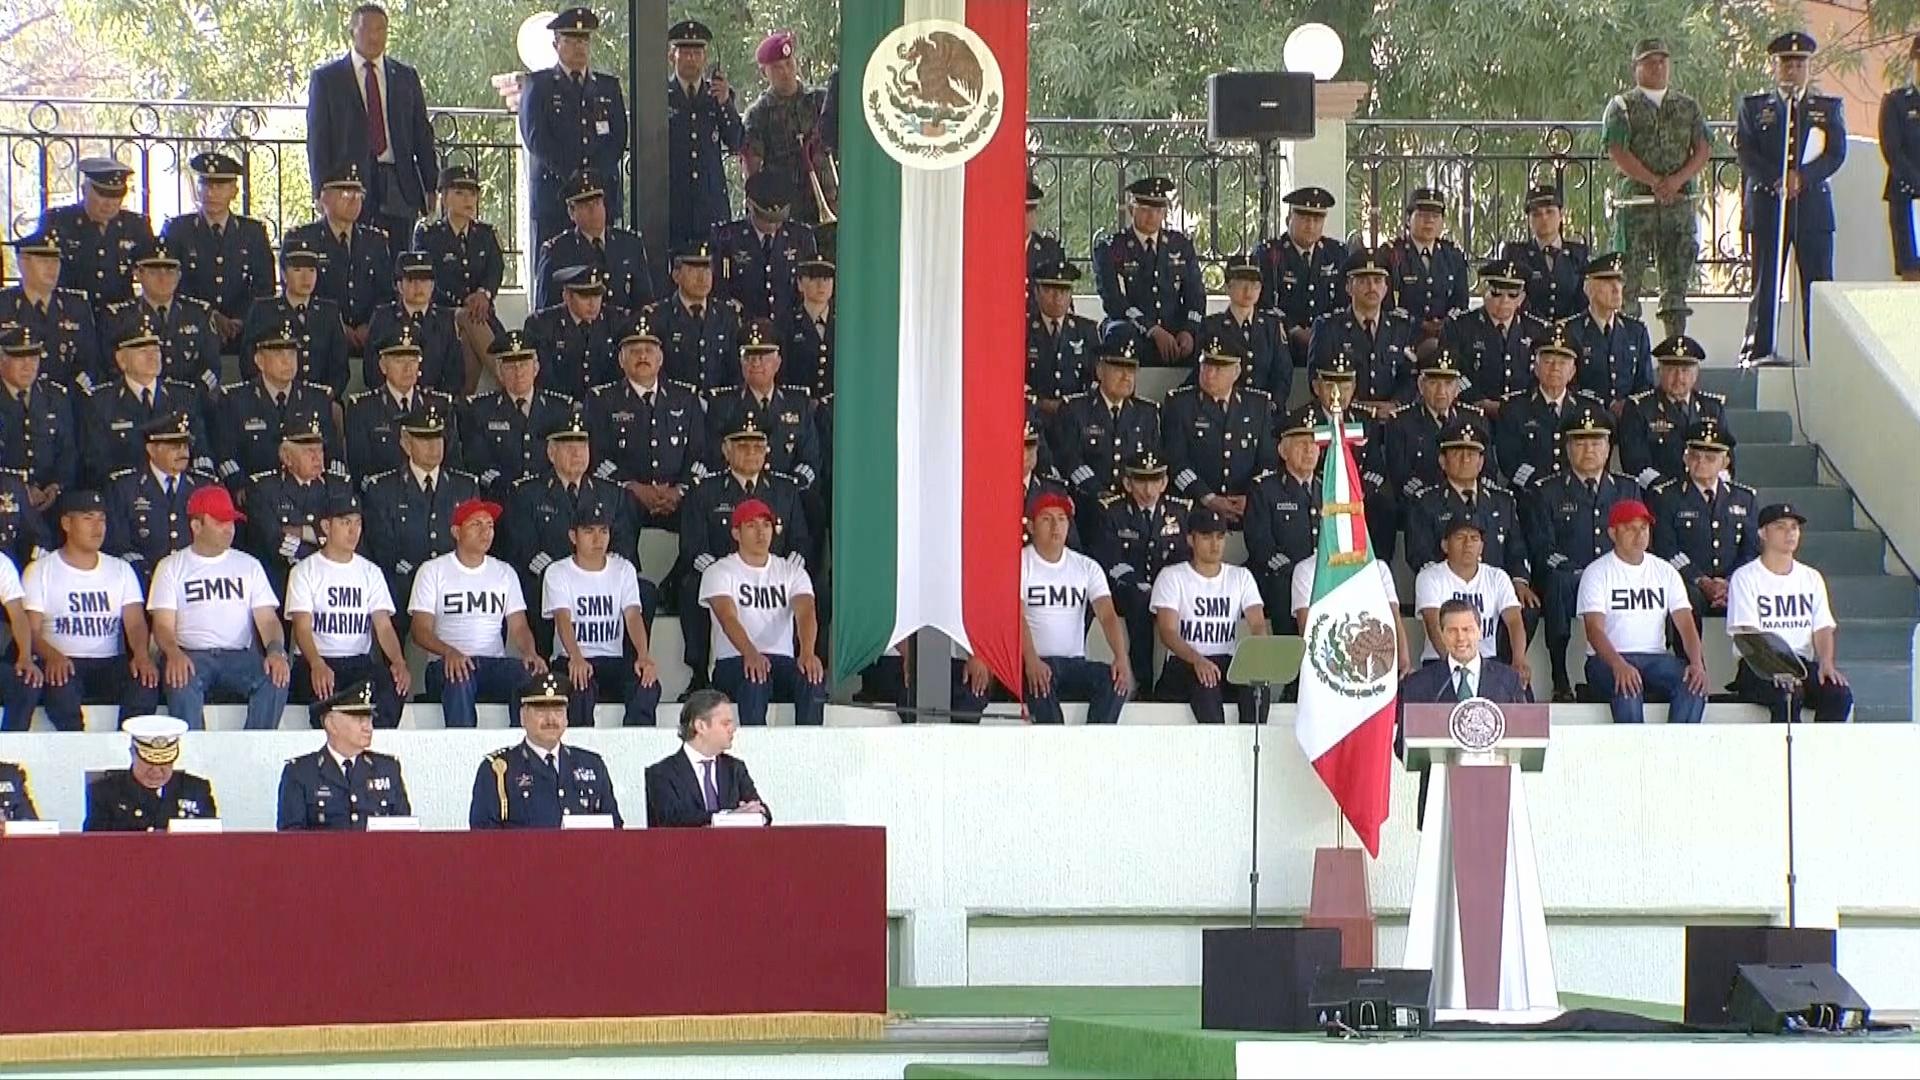 Reconoce el presidente Peña Nieto a las Fuerzas Armadas durante conmemoración del 153 aniversario de la Batalla de Puebla